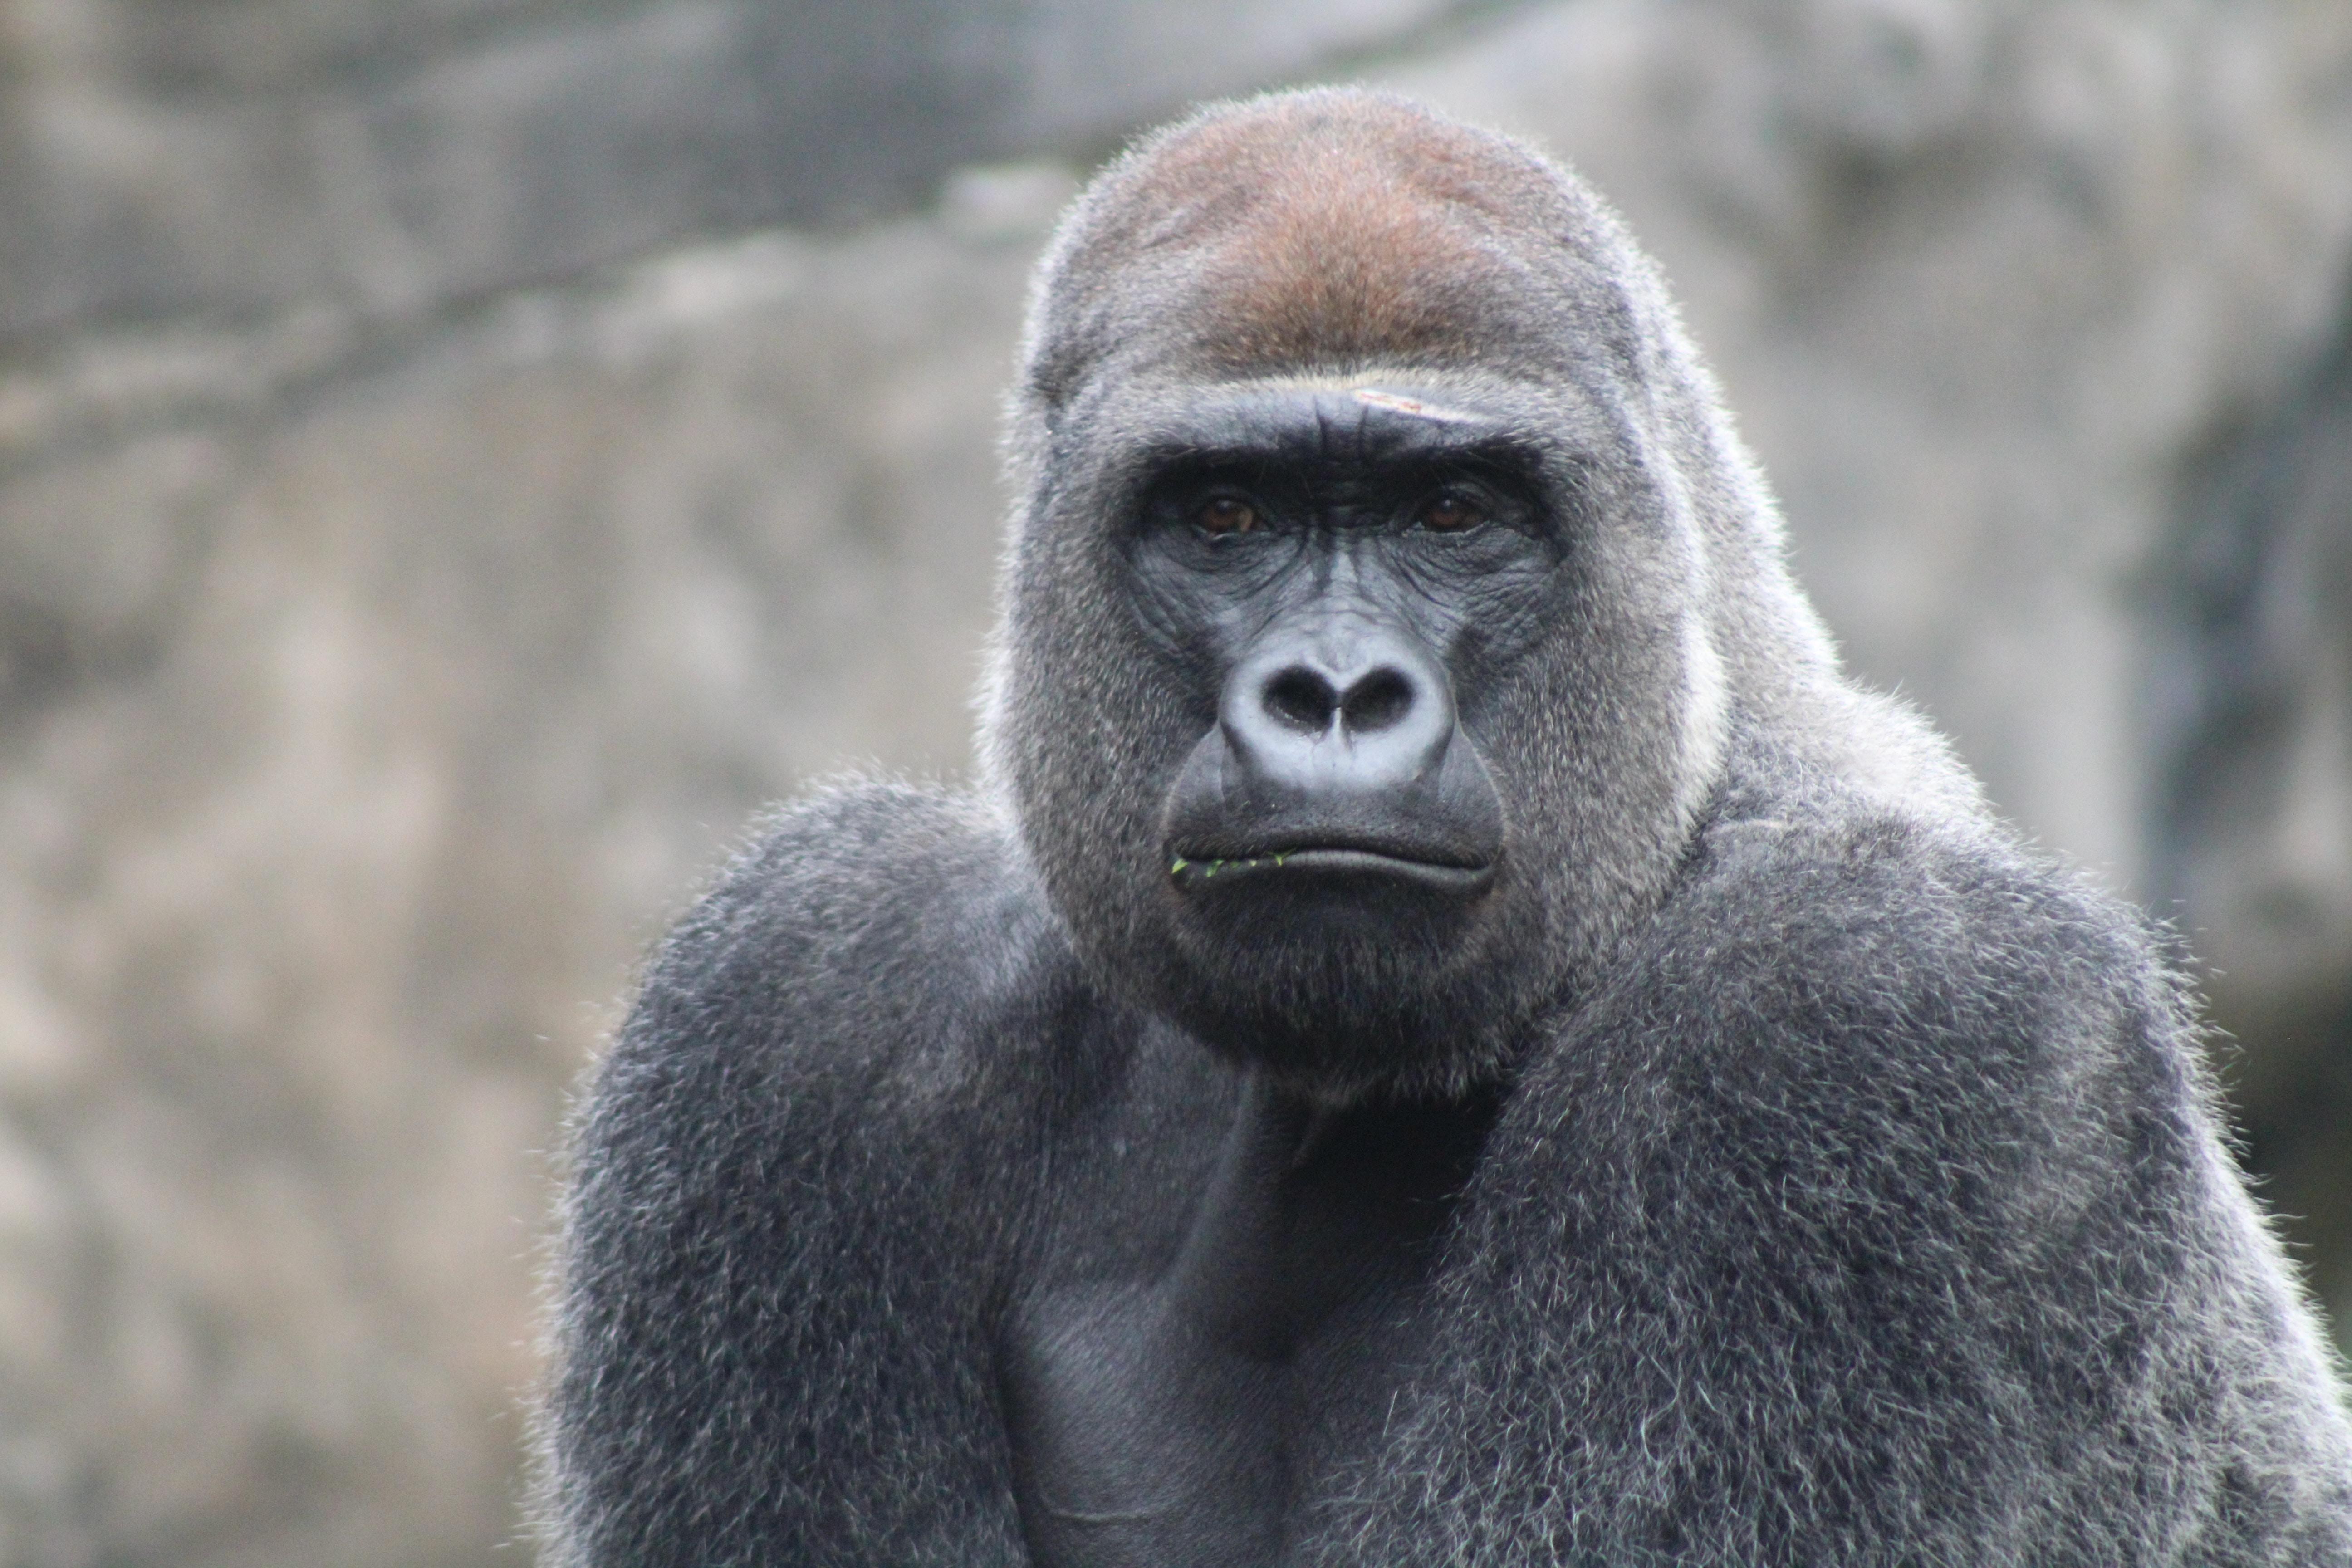 Gorila es capturado en video caminado como un humano